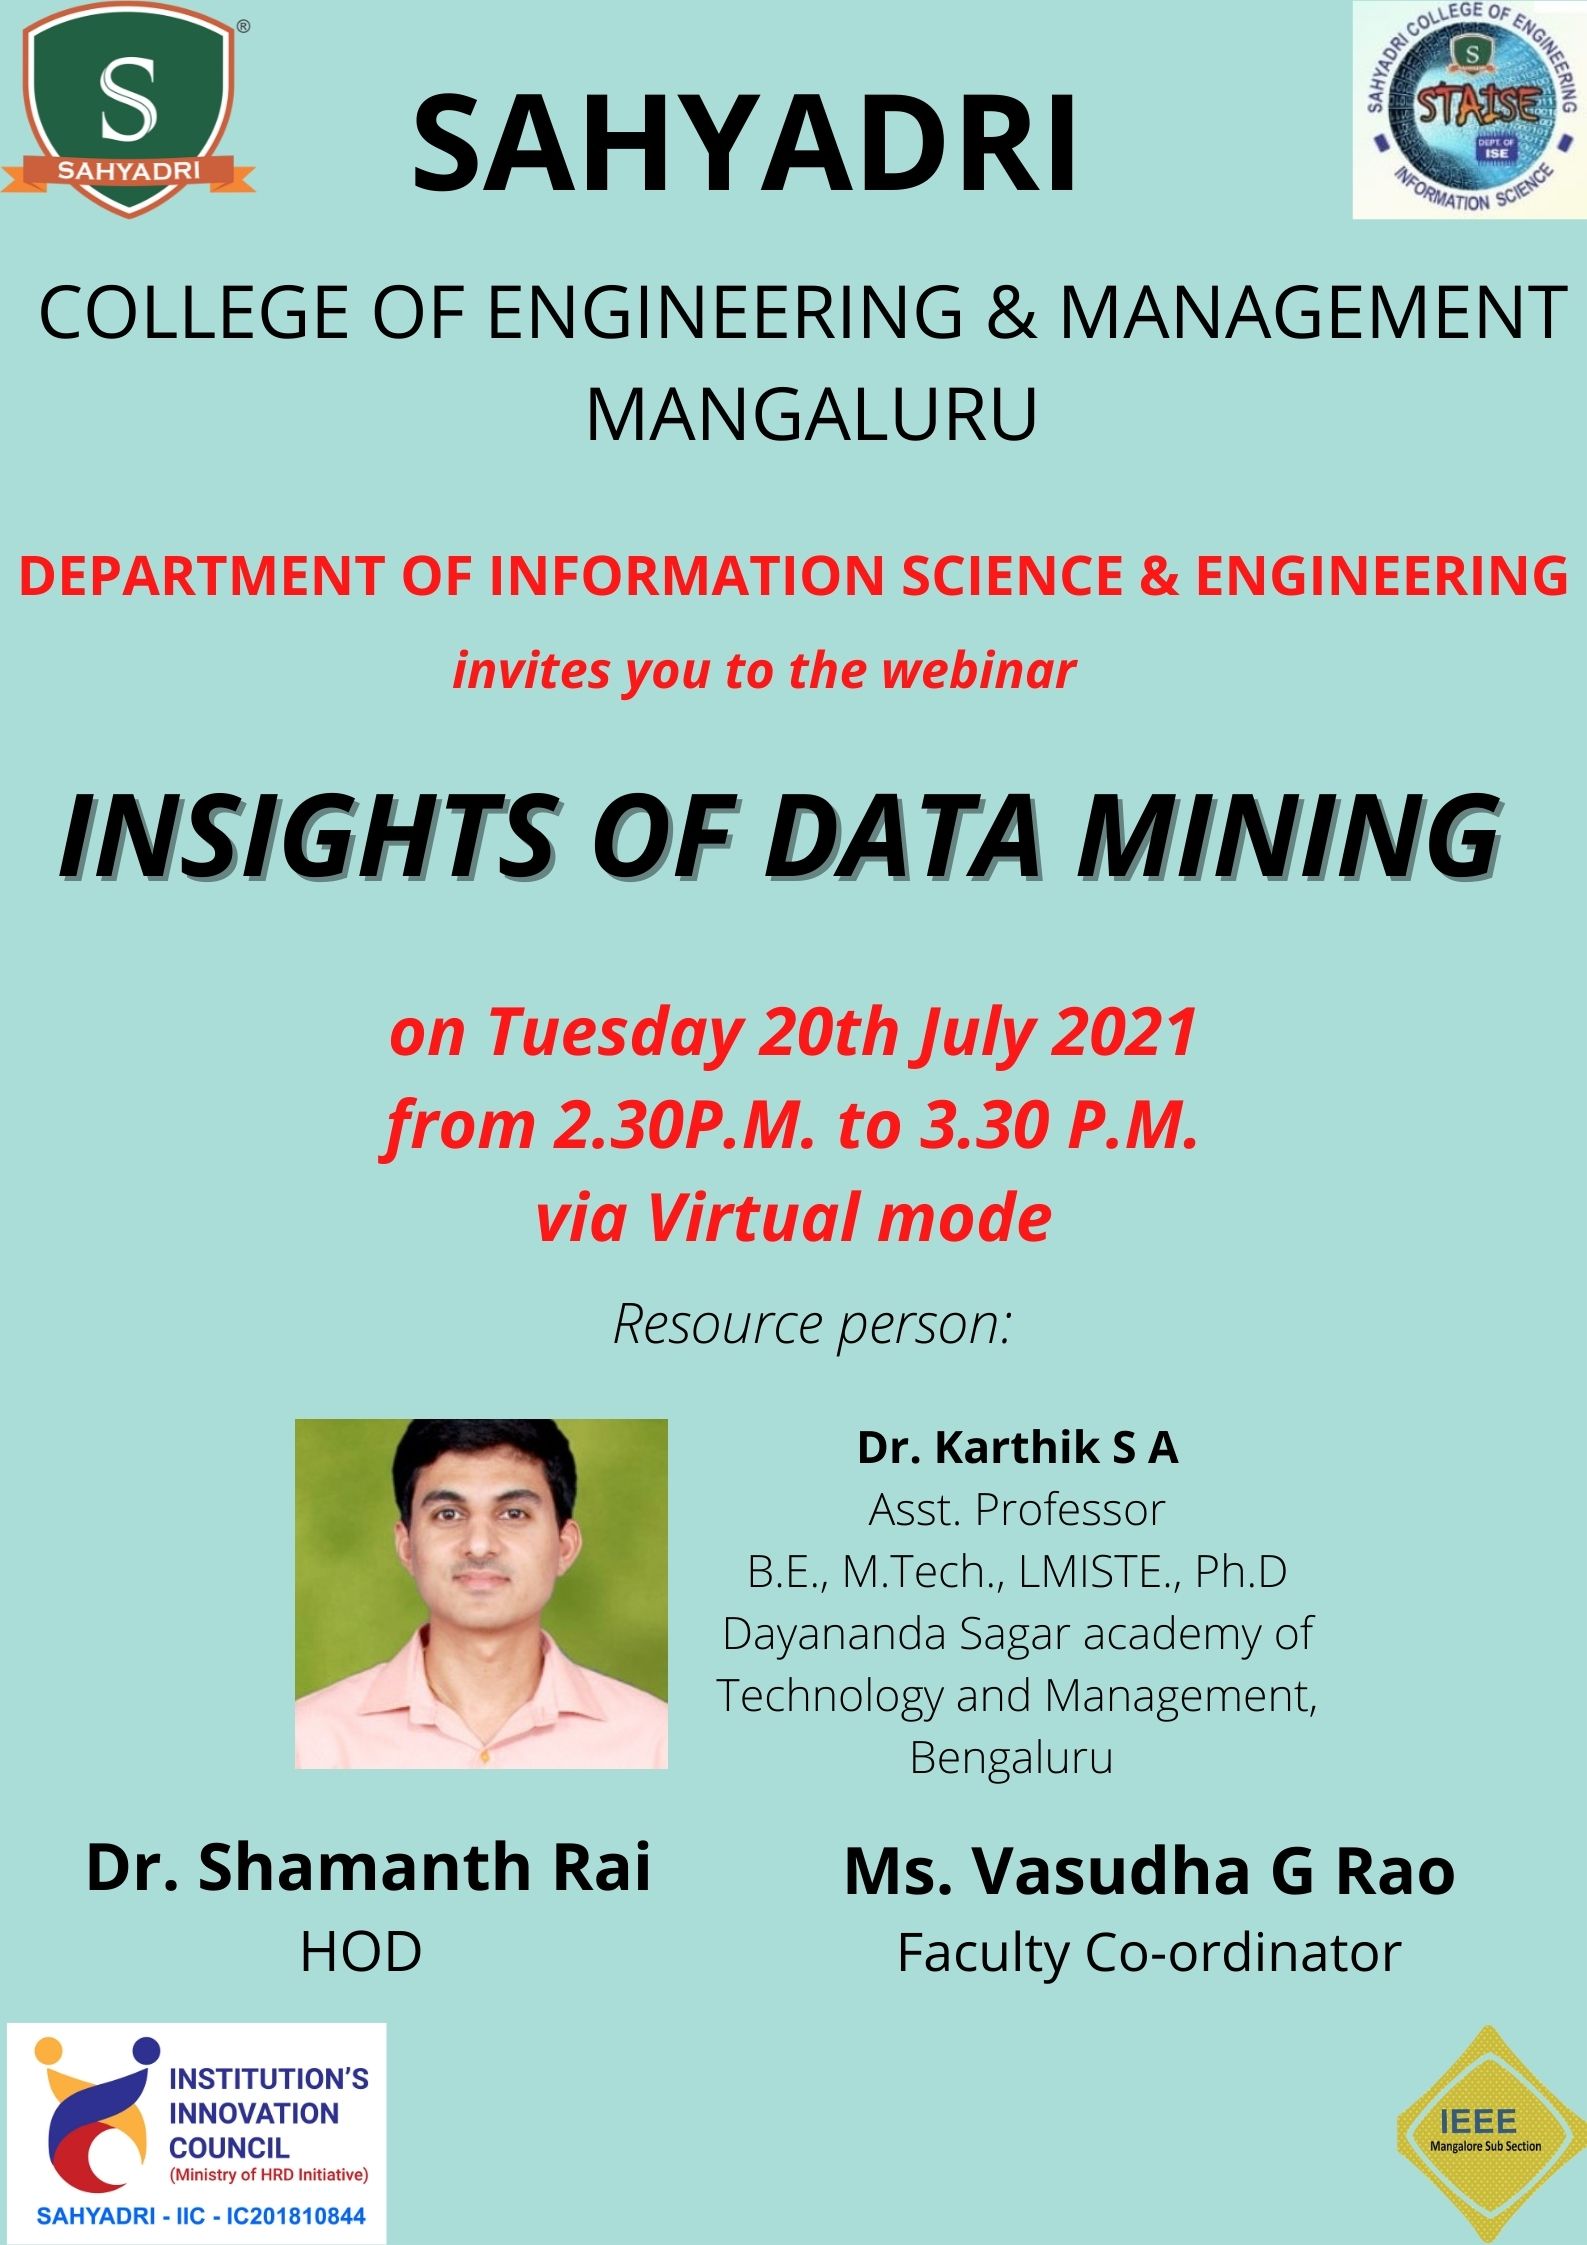 Webinar on Insights of Data Mining